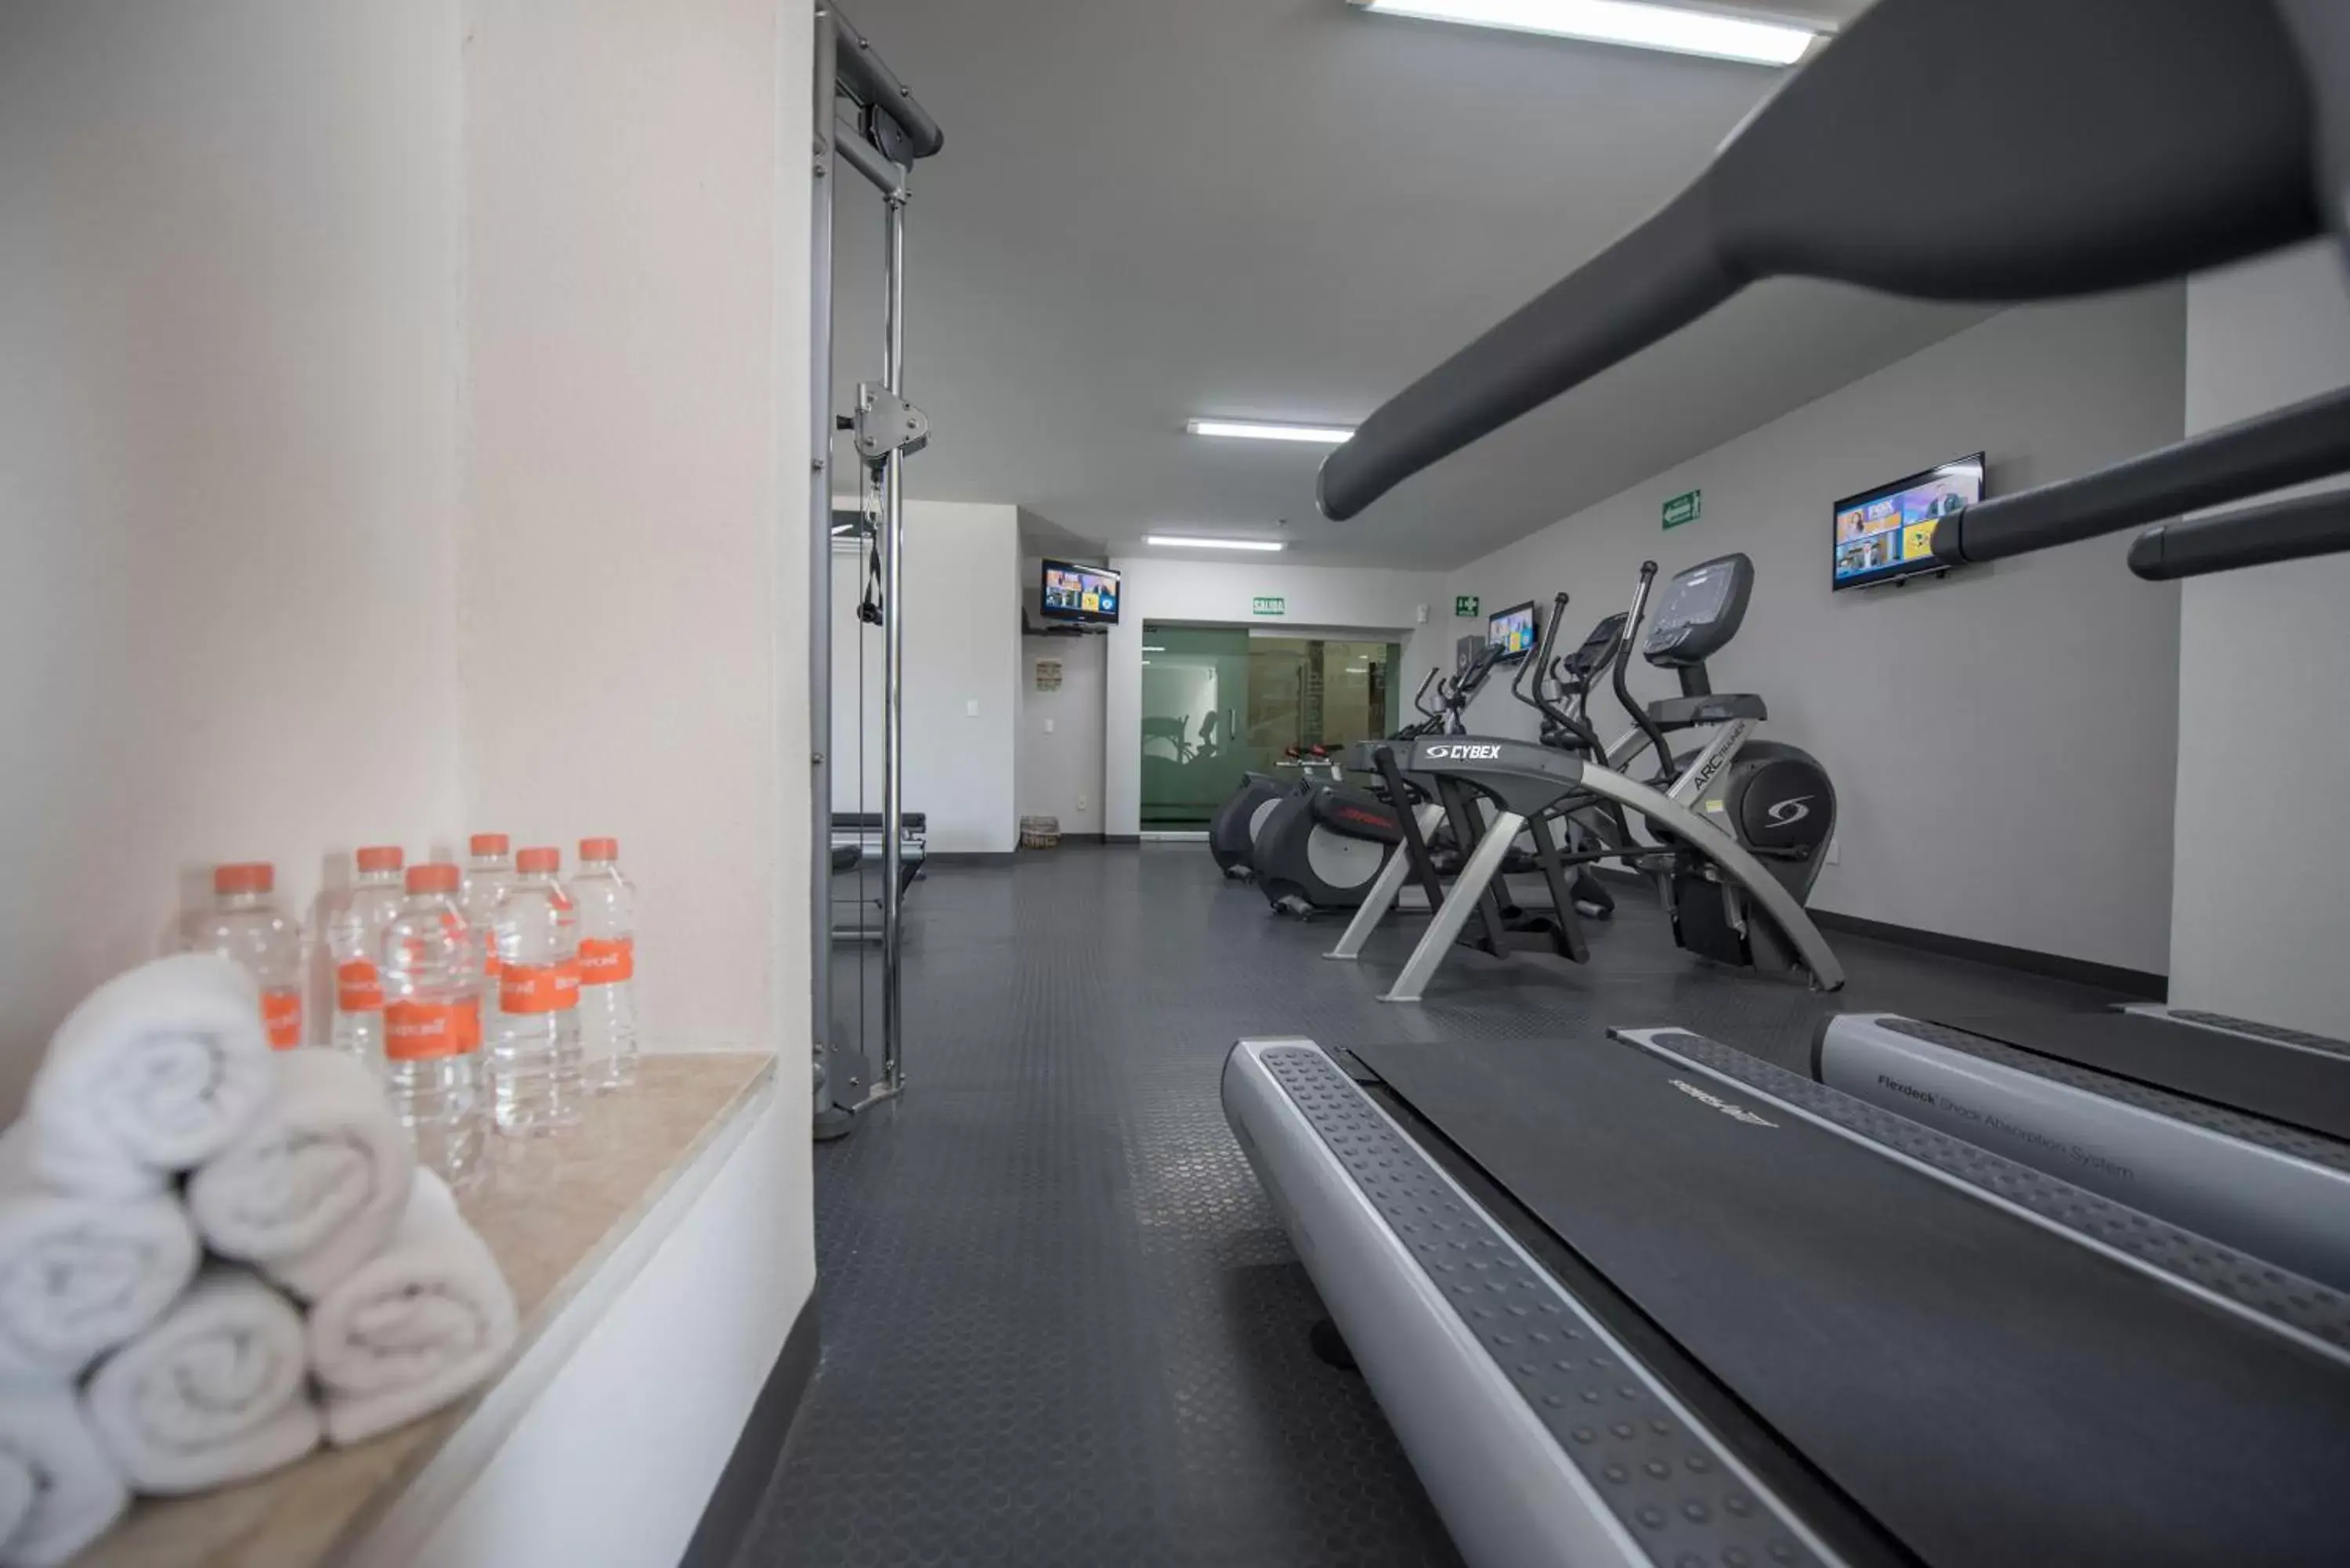 Fitness centre/facilities, Fitness Center/Facilities in Victoria Ejecutivo